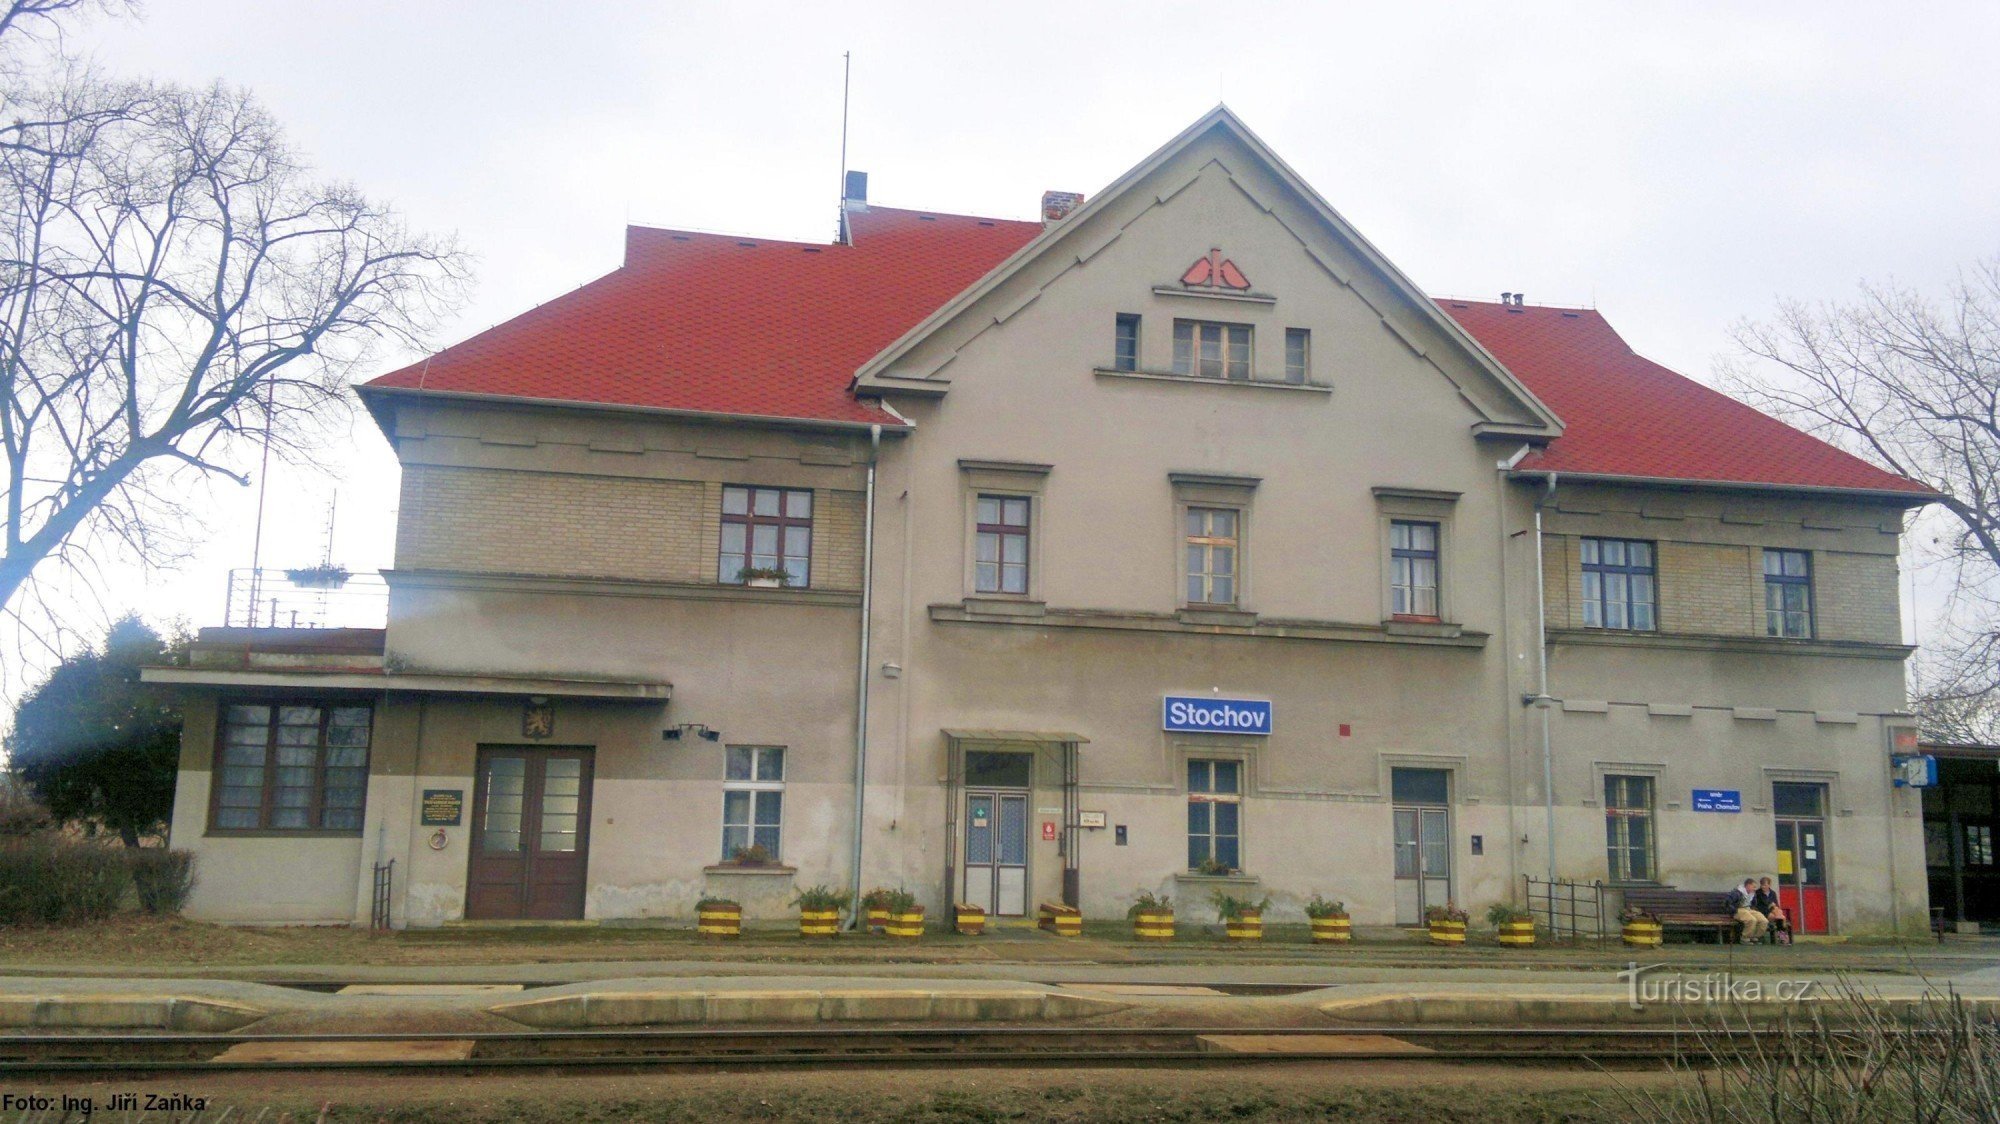 Estação Stochov